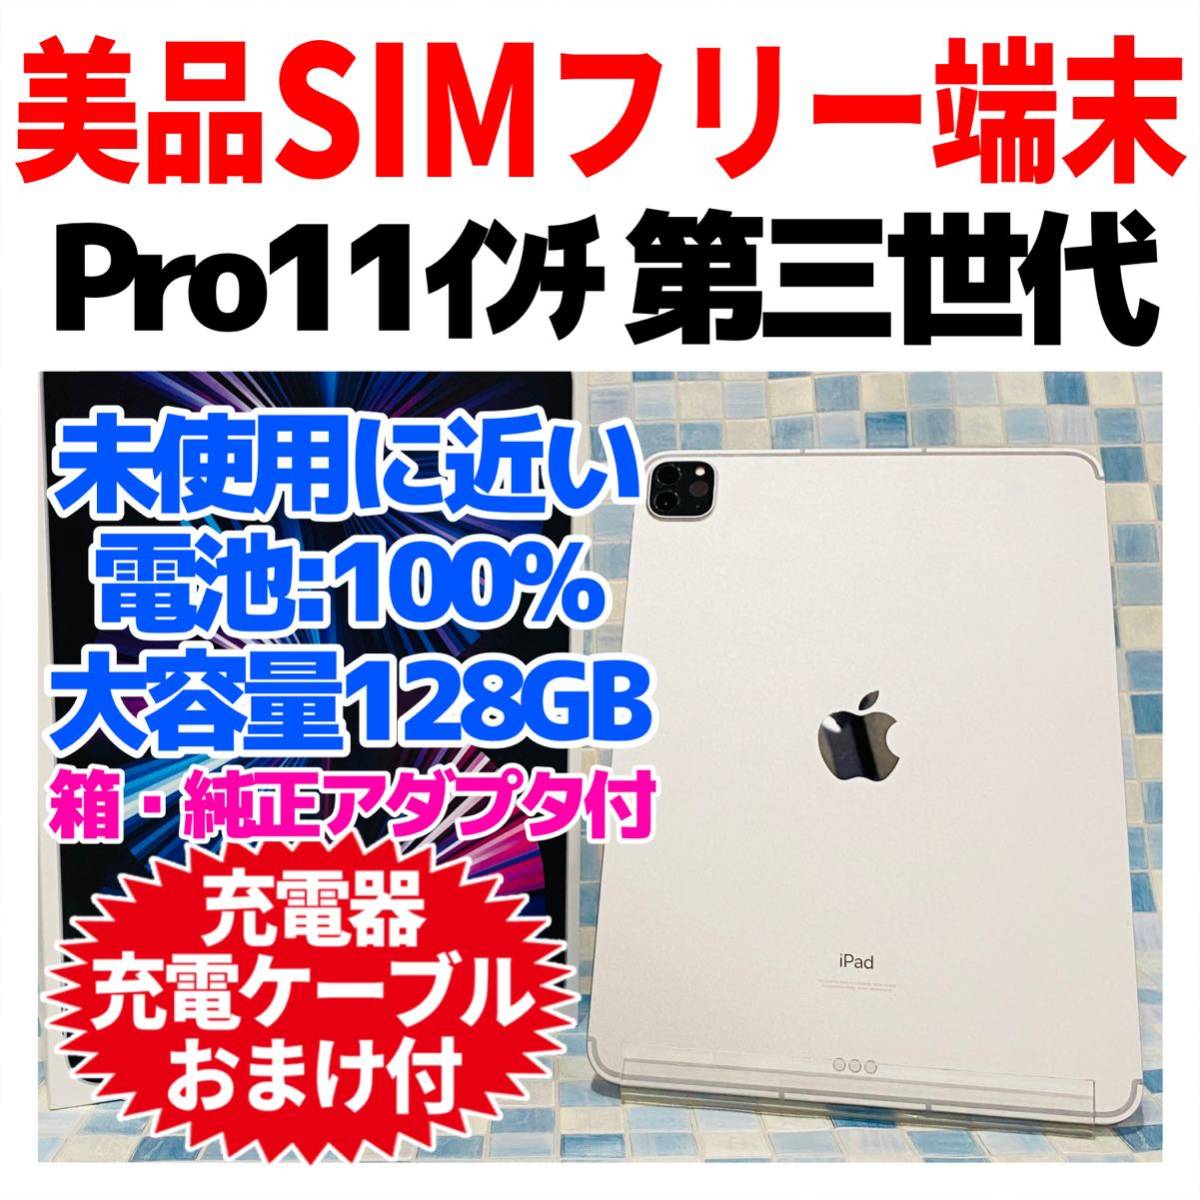 日本産】 iPad Pro 11インチ 第3世代 128GB 本体 オマケつき econet.bi